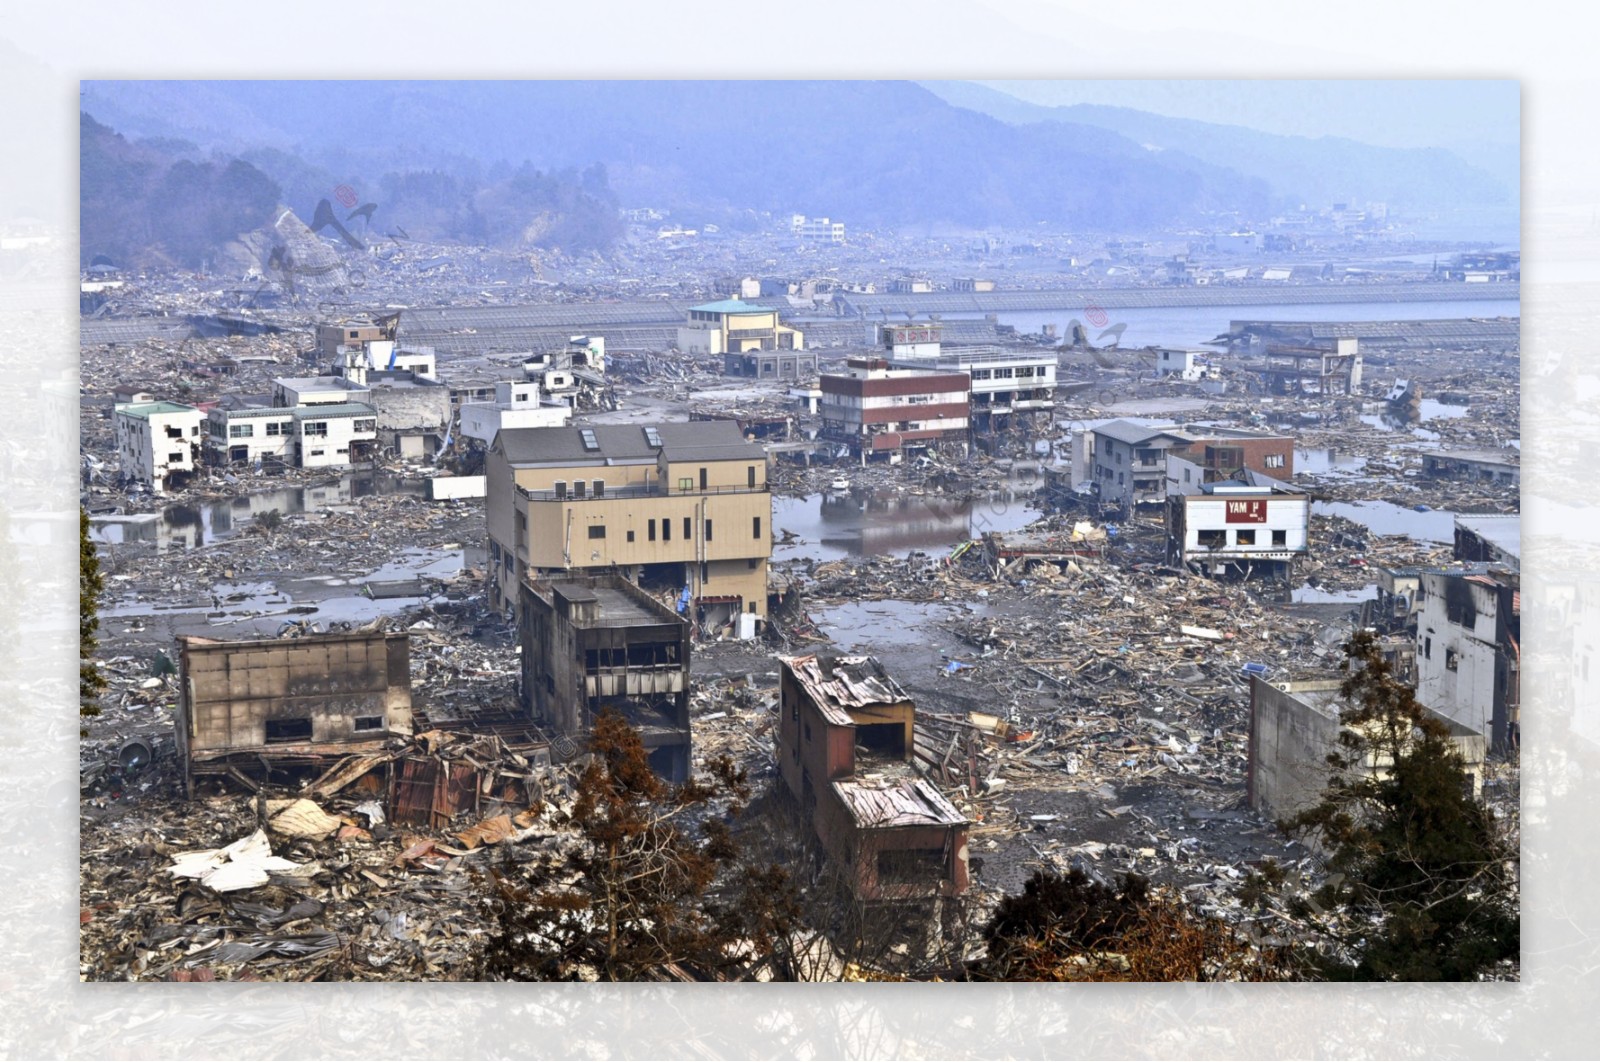 日本大地震海啸后场景图片